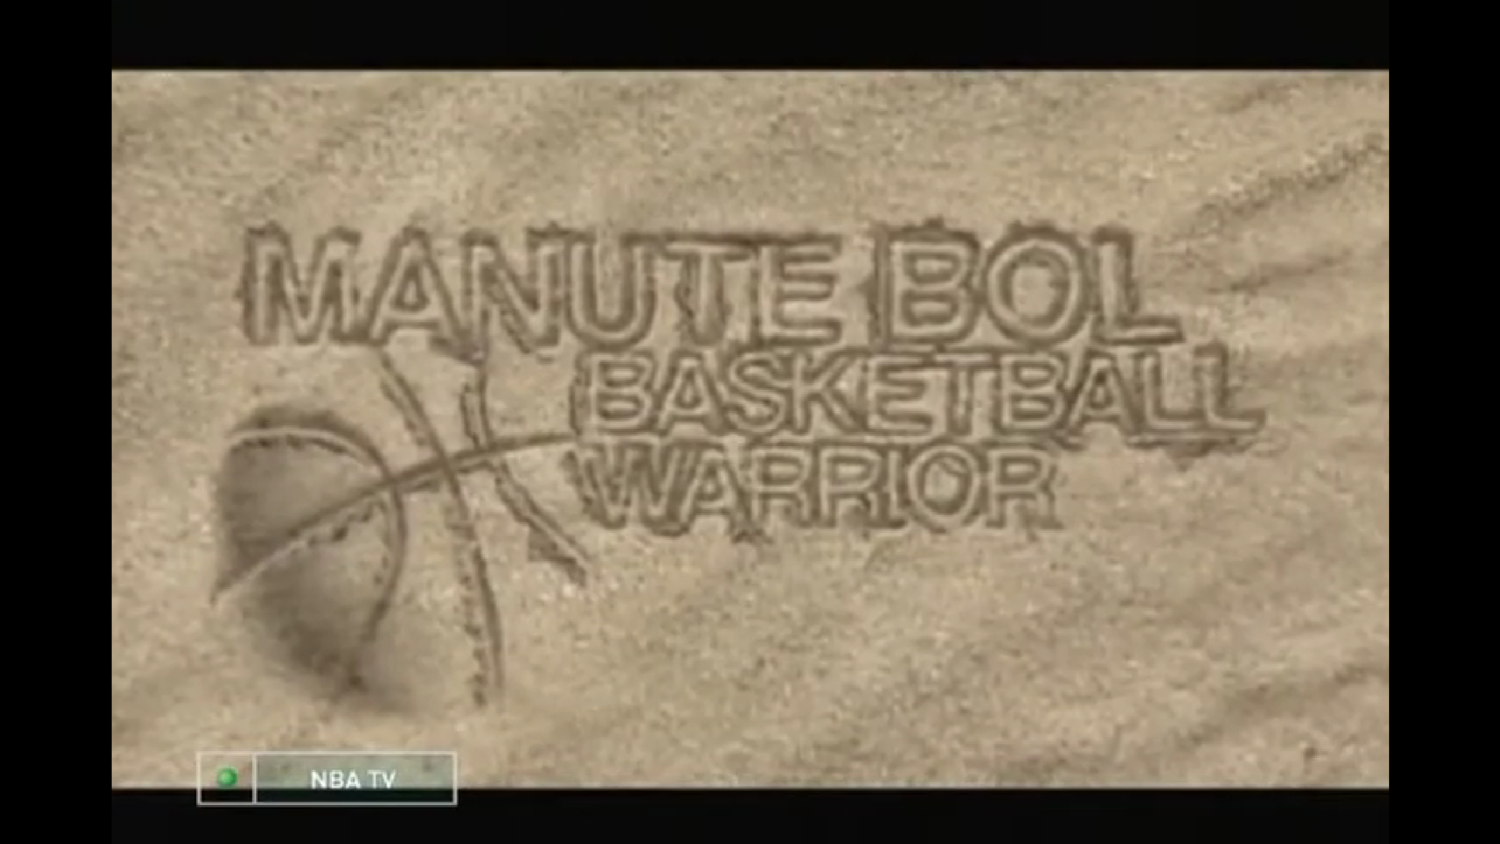 Баскетбольный воин. Манутэ Бол. Телеканал NBA TV